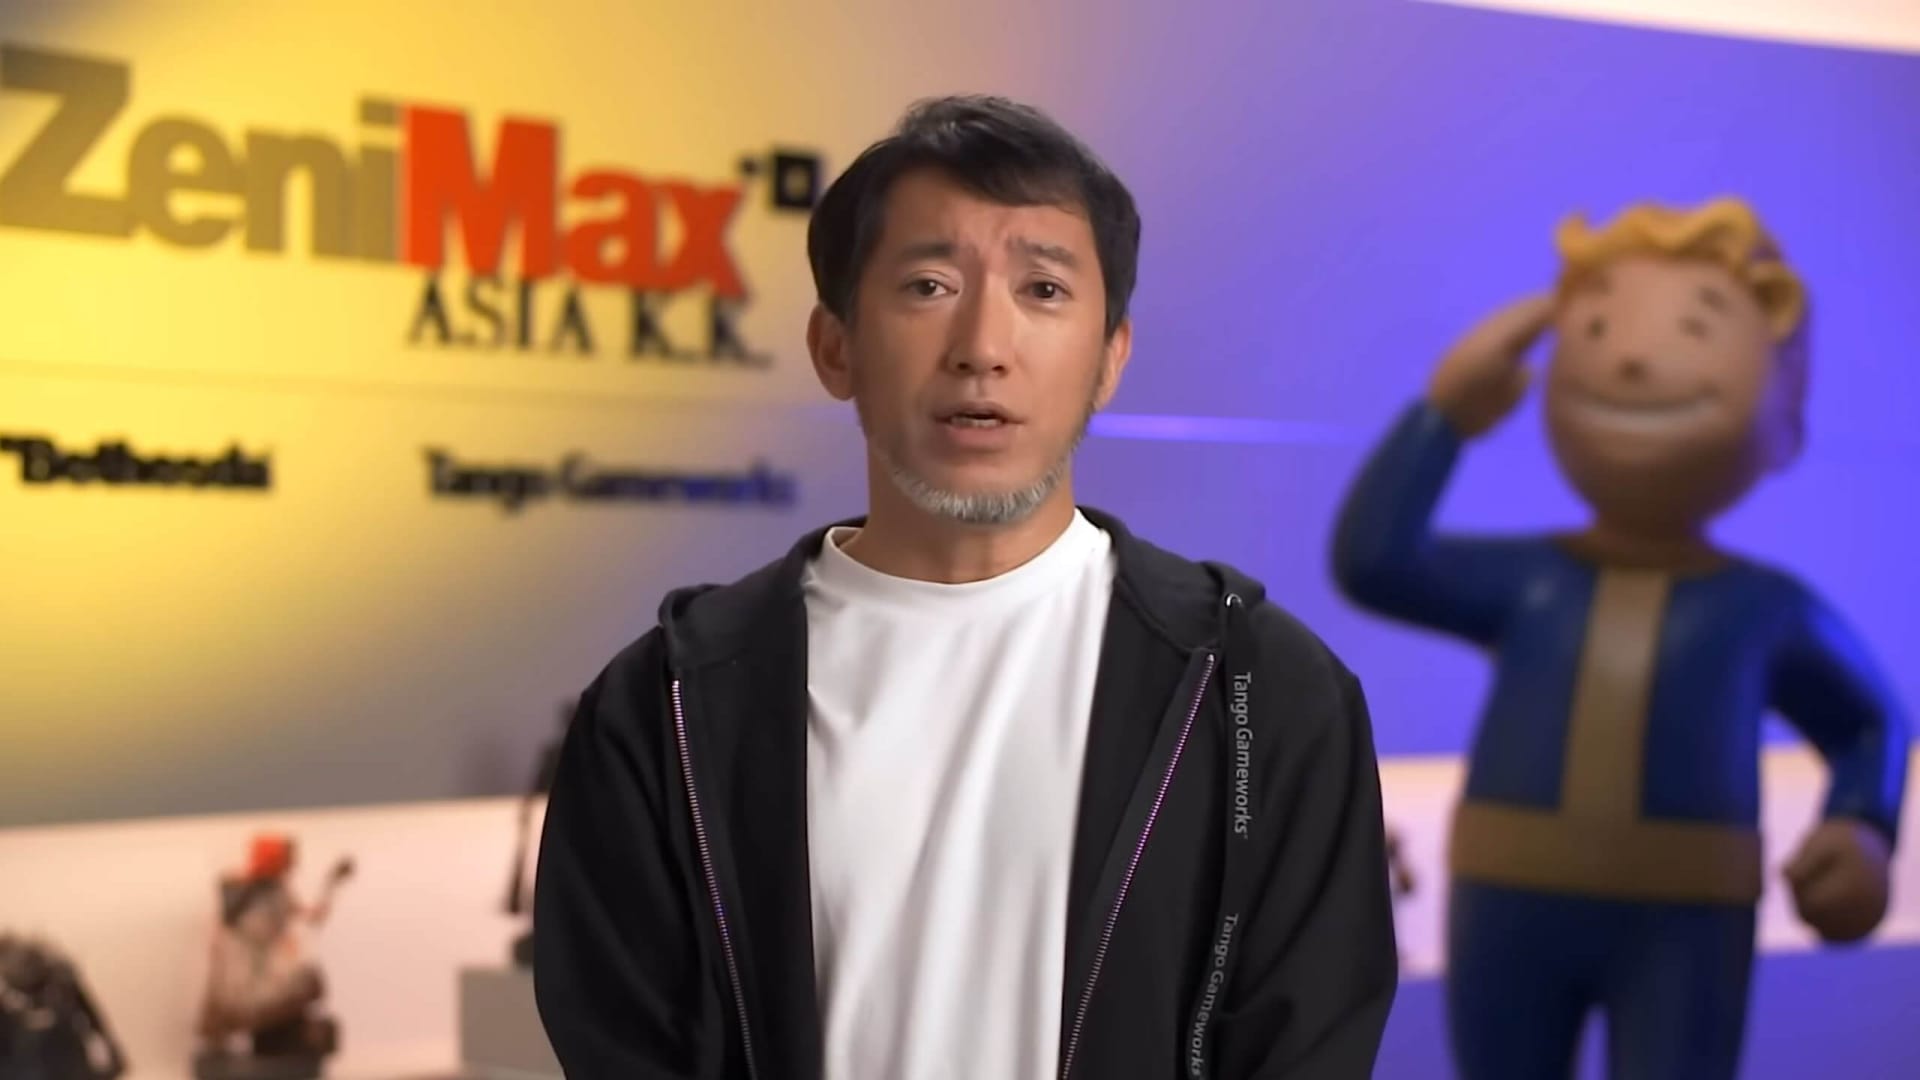 Shinji Mikami speaking in front of a ZeniMax background